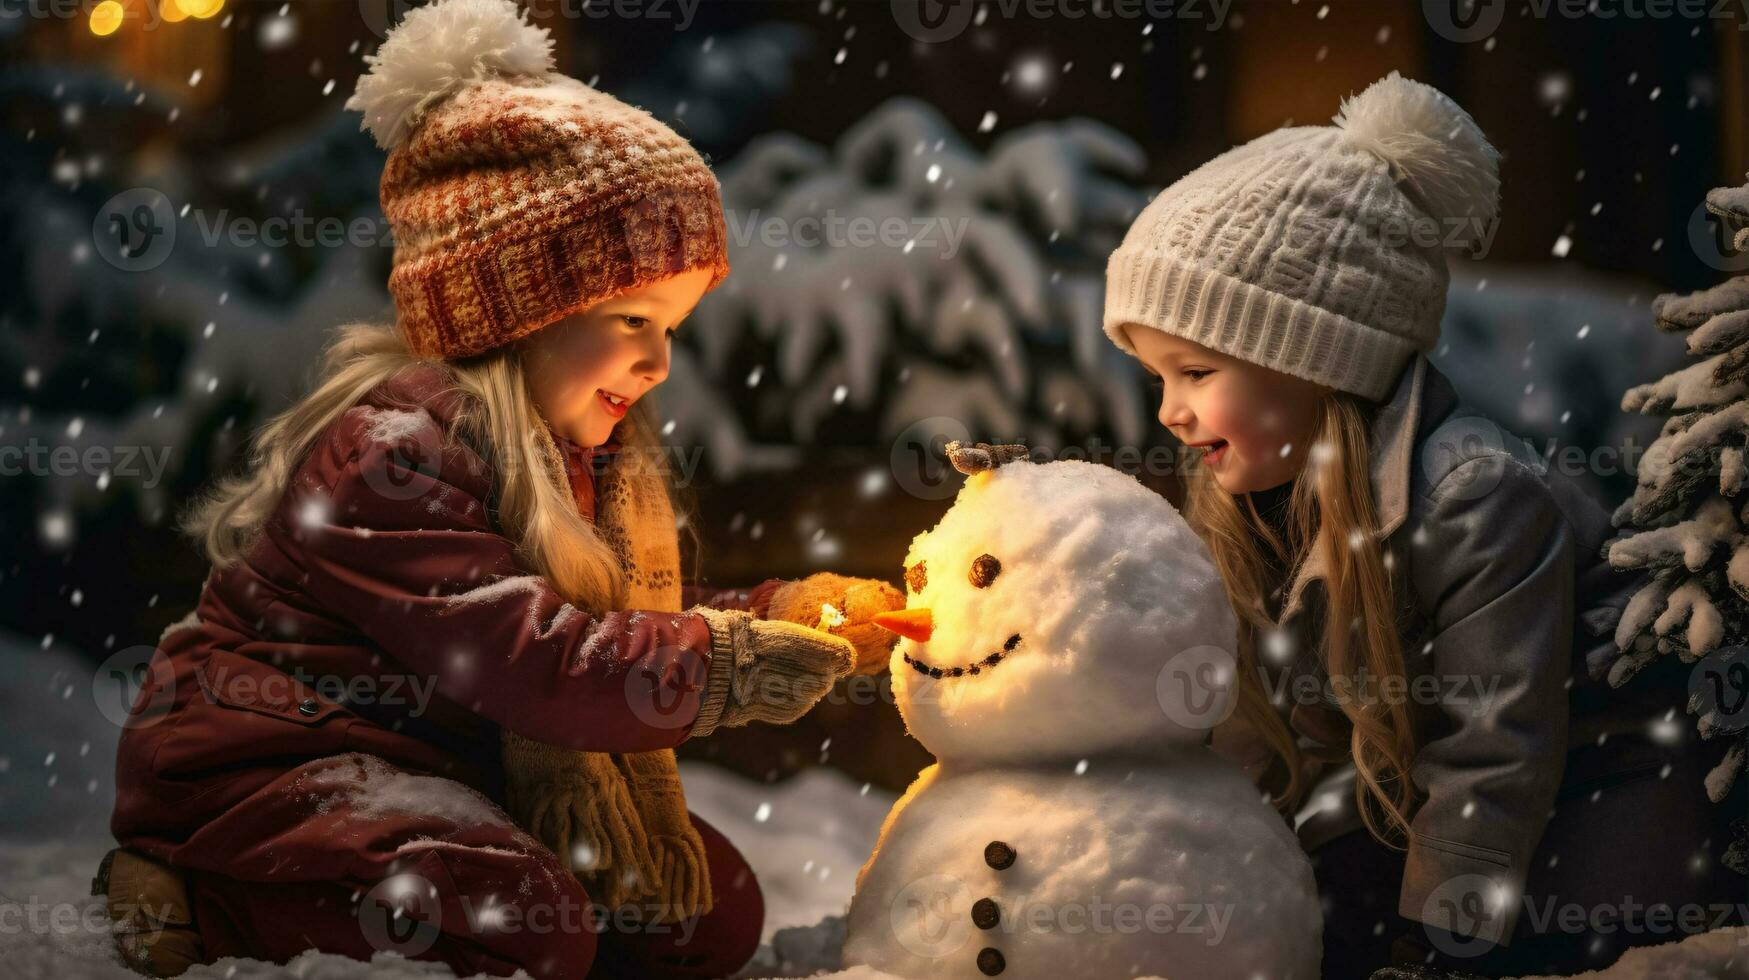 kinderen Speel buitenshuis in sneeuw. buitenshuis pret voor familie Kerstmis vakantie. spelen buitenshuis. gelukkig kind hebben pret met sneeuwman. foto